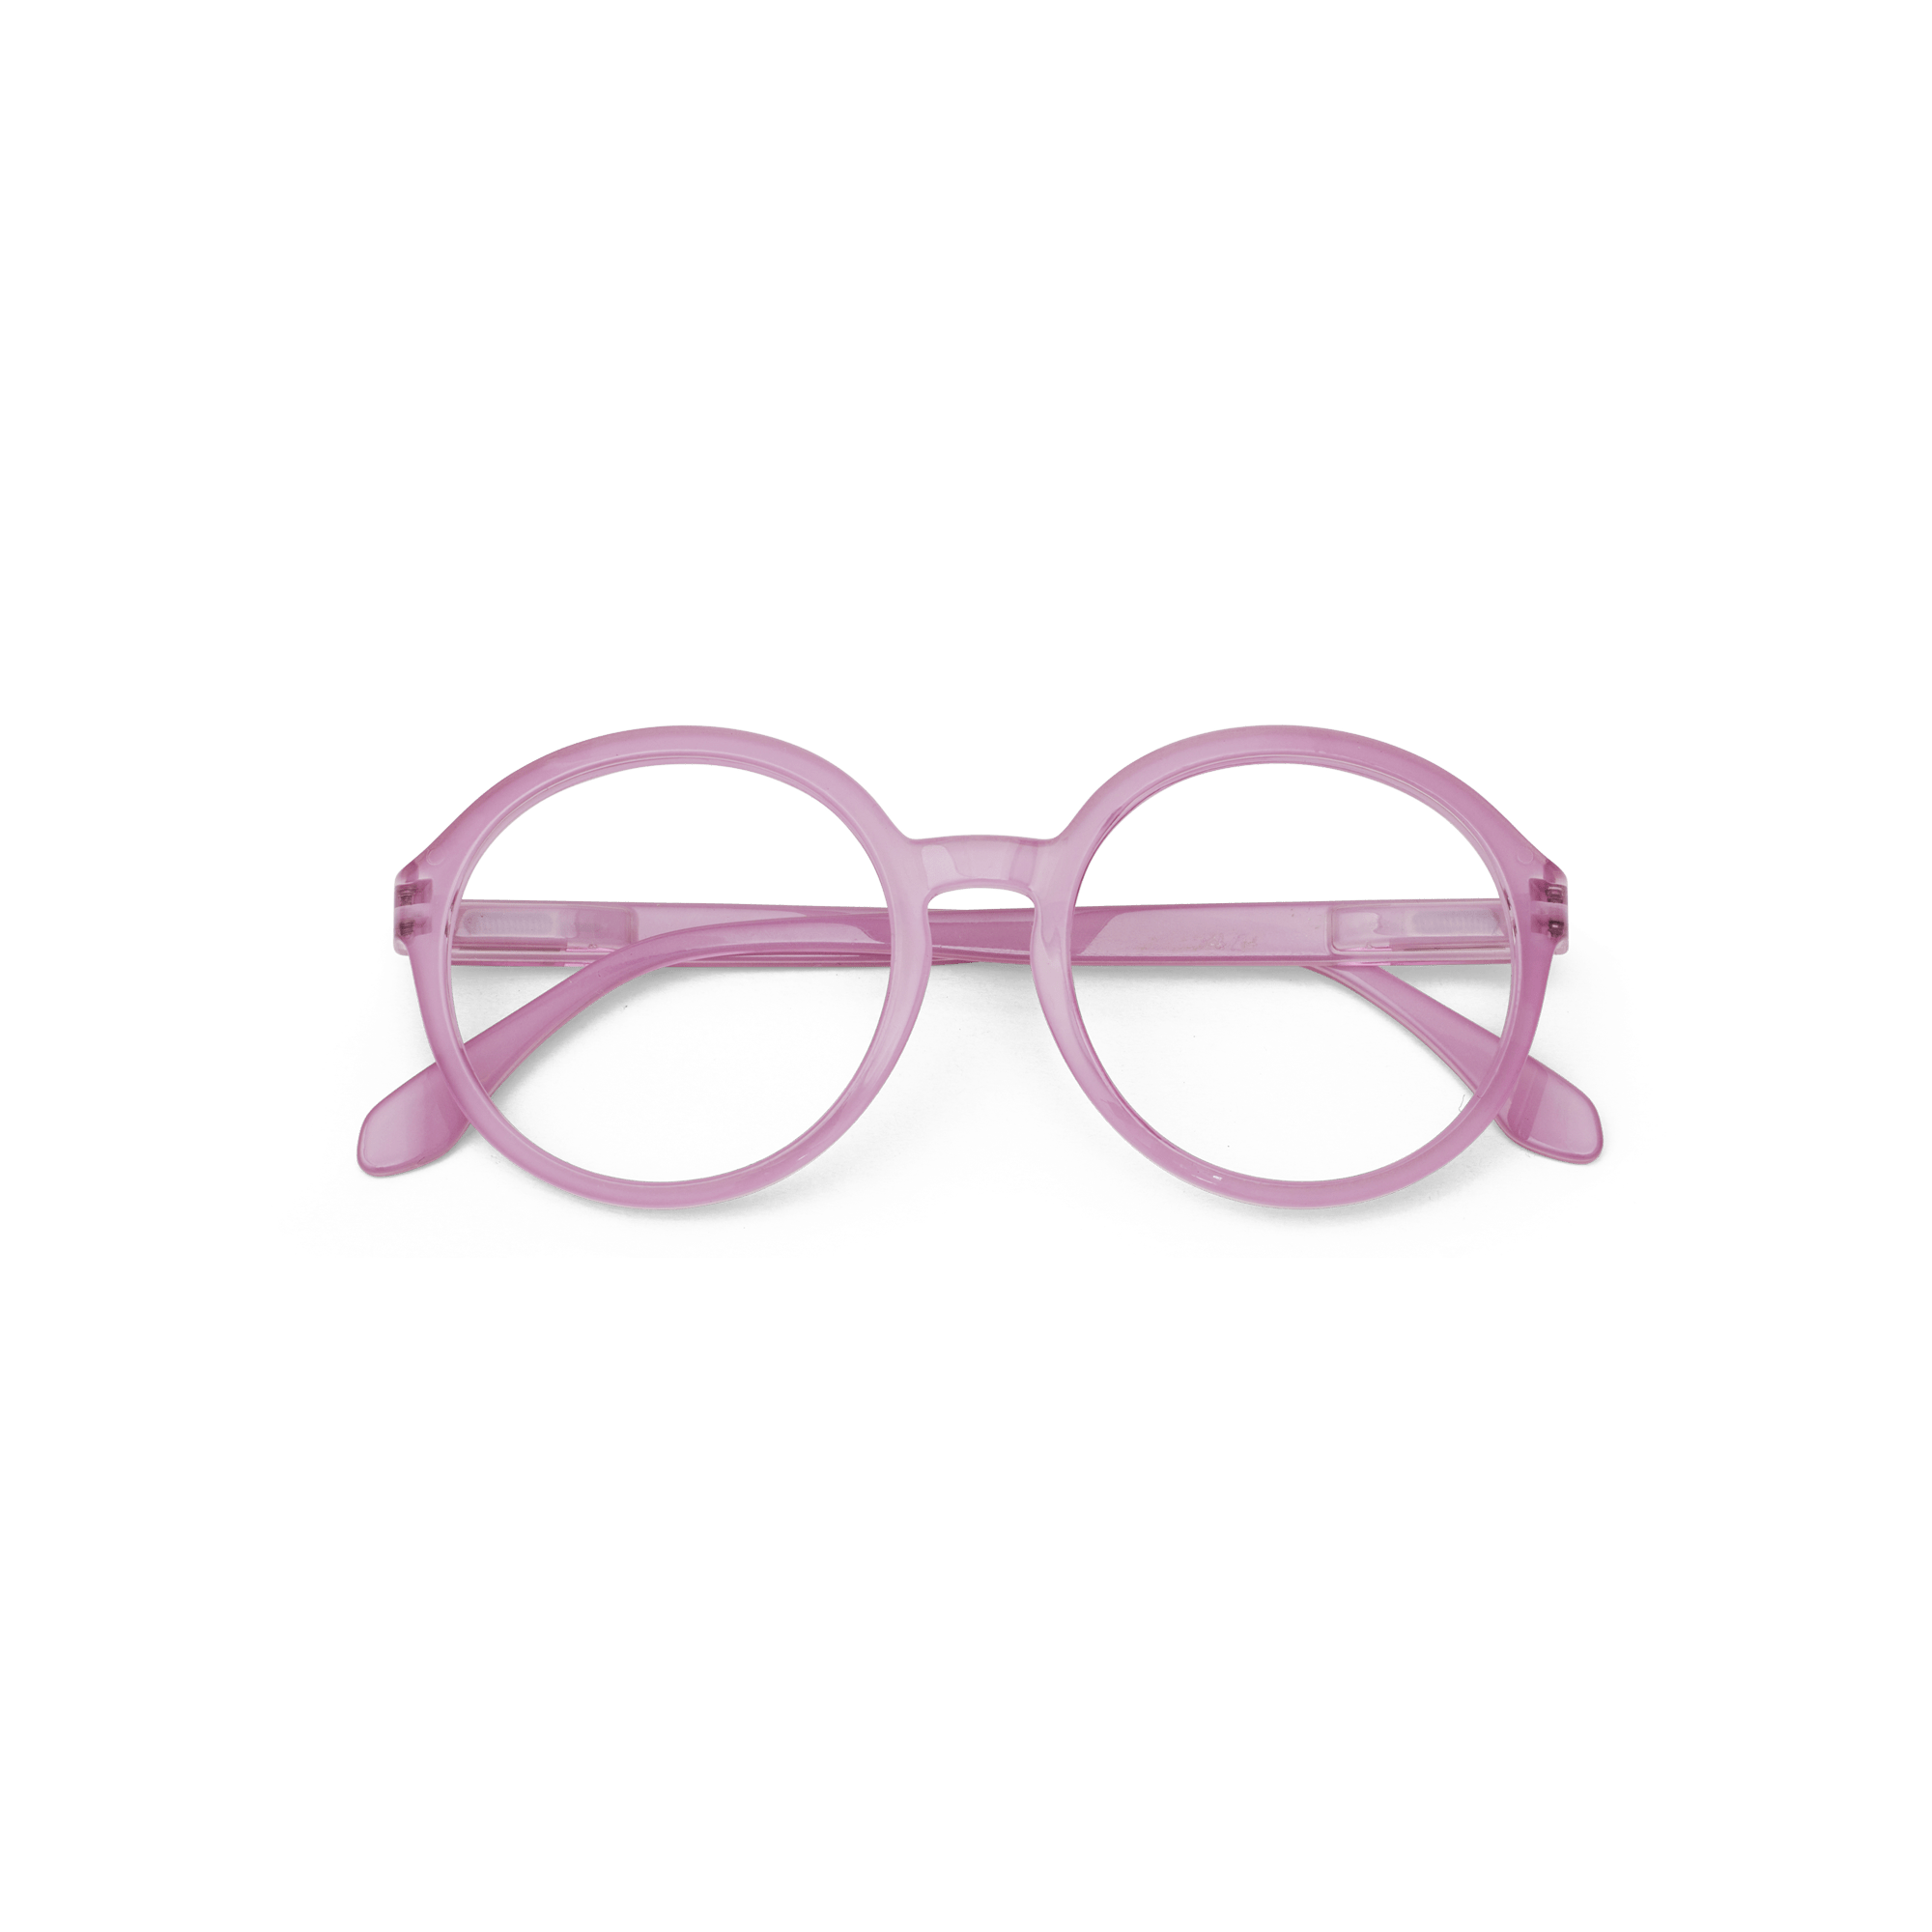 Reading glasses Diva - rose